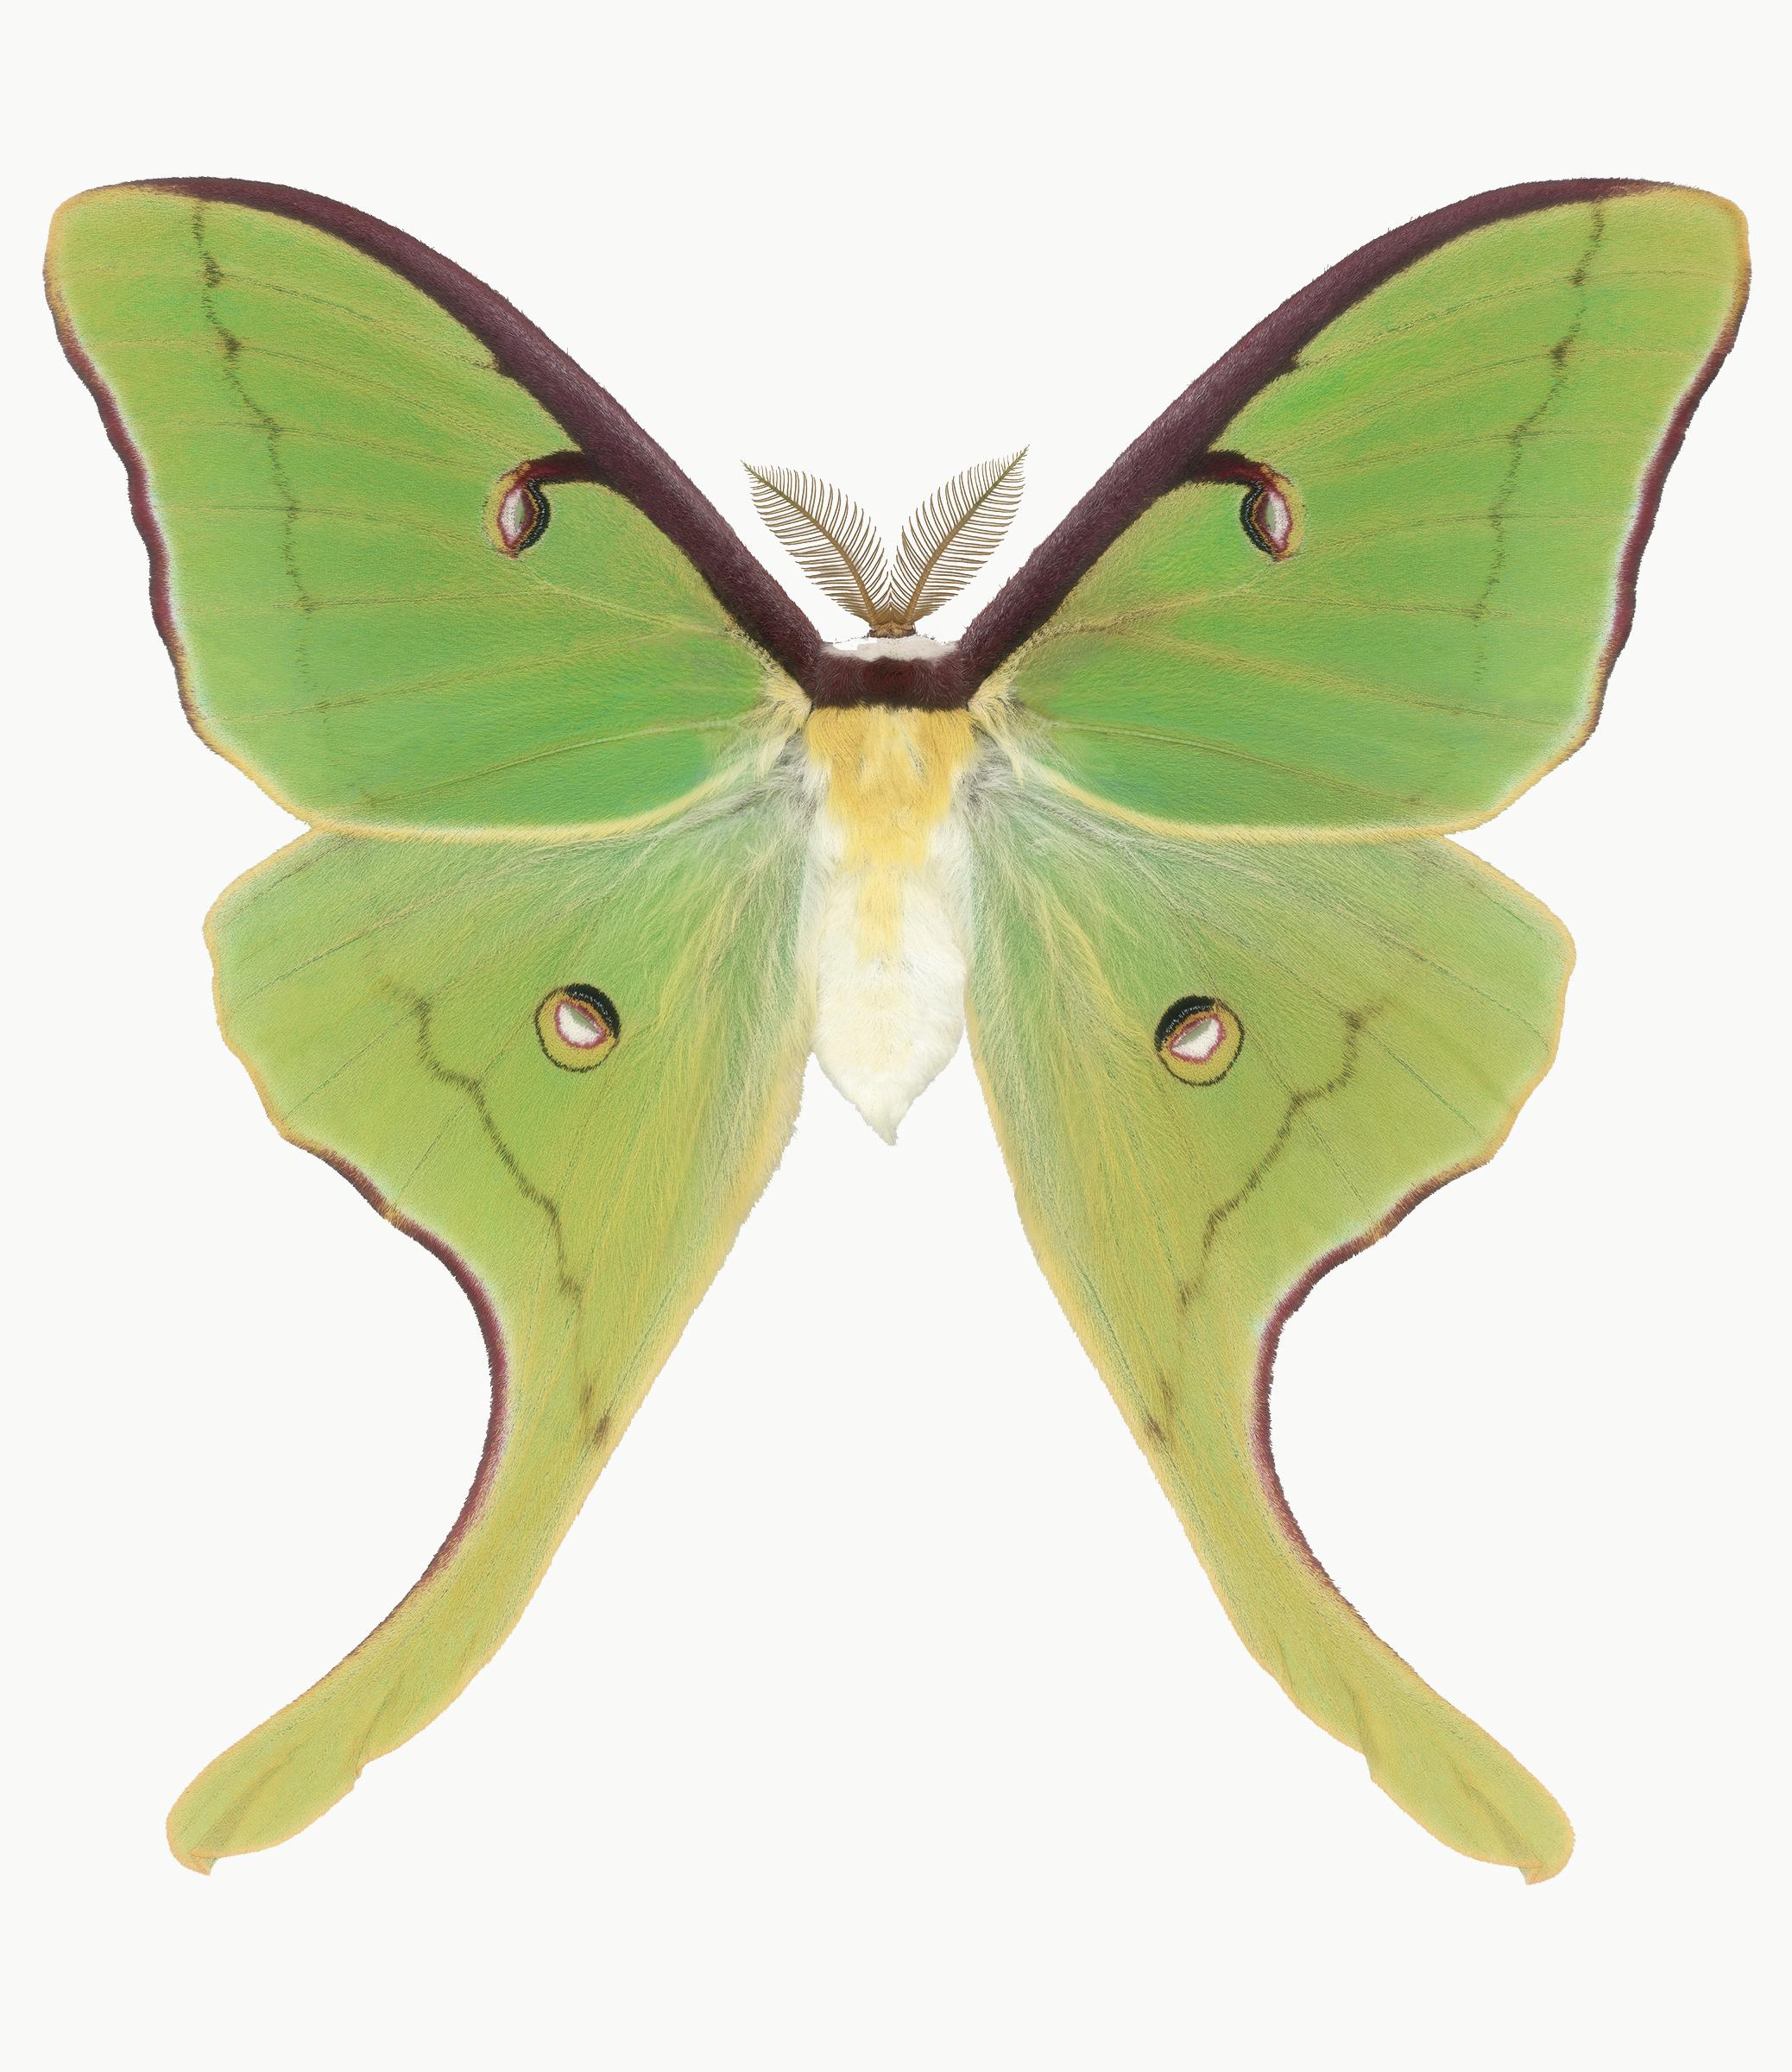 Color Photograph Joseph Scheer - Actias Luna, vert, jaune, Brown Insecte papillon de nuit Photographie Nature